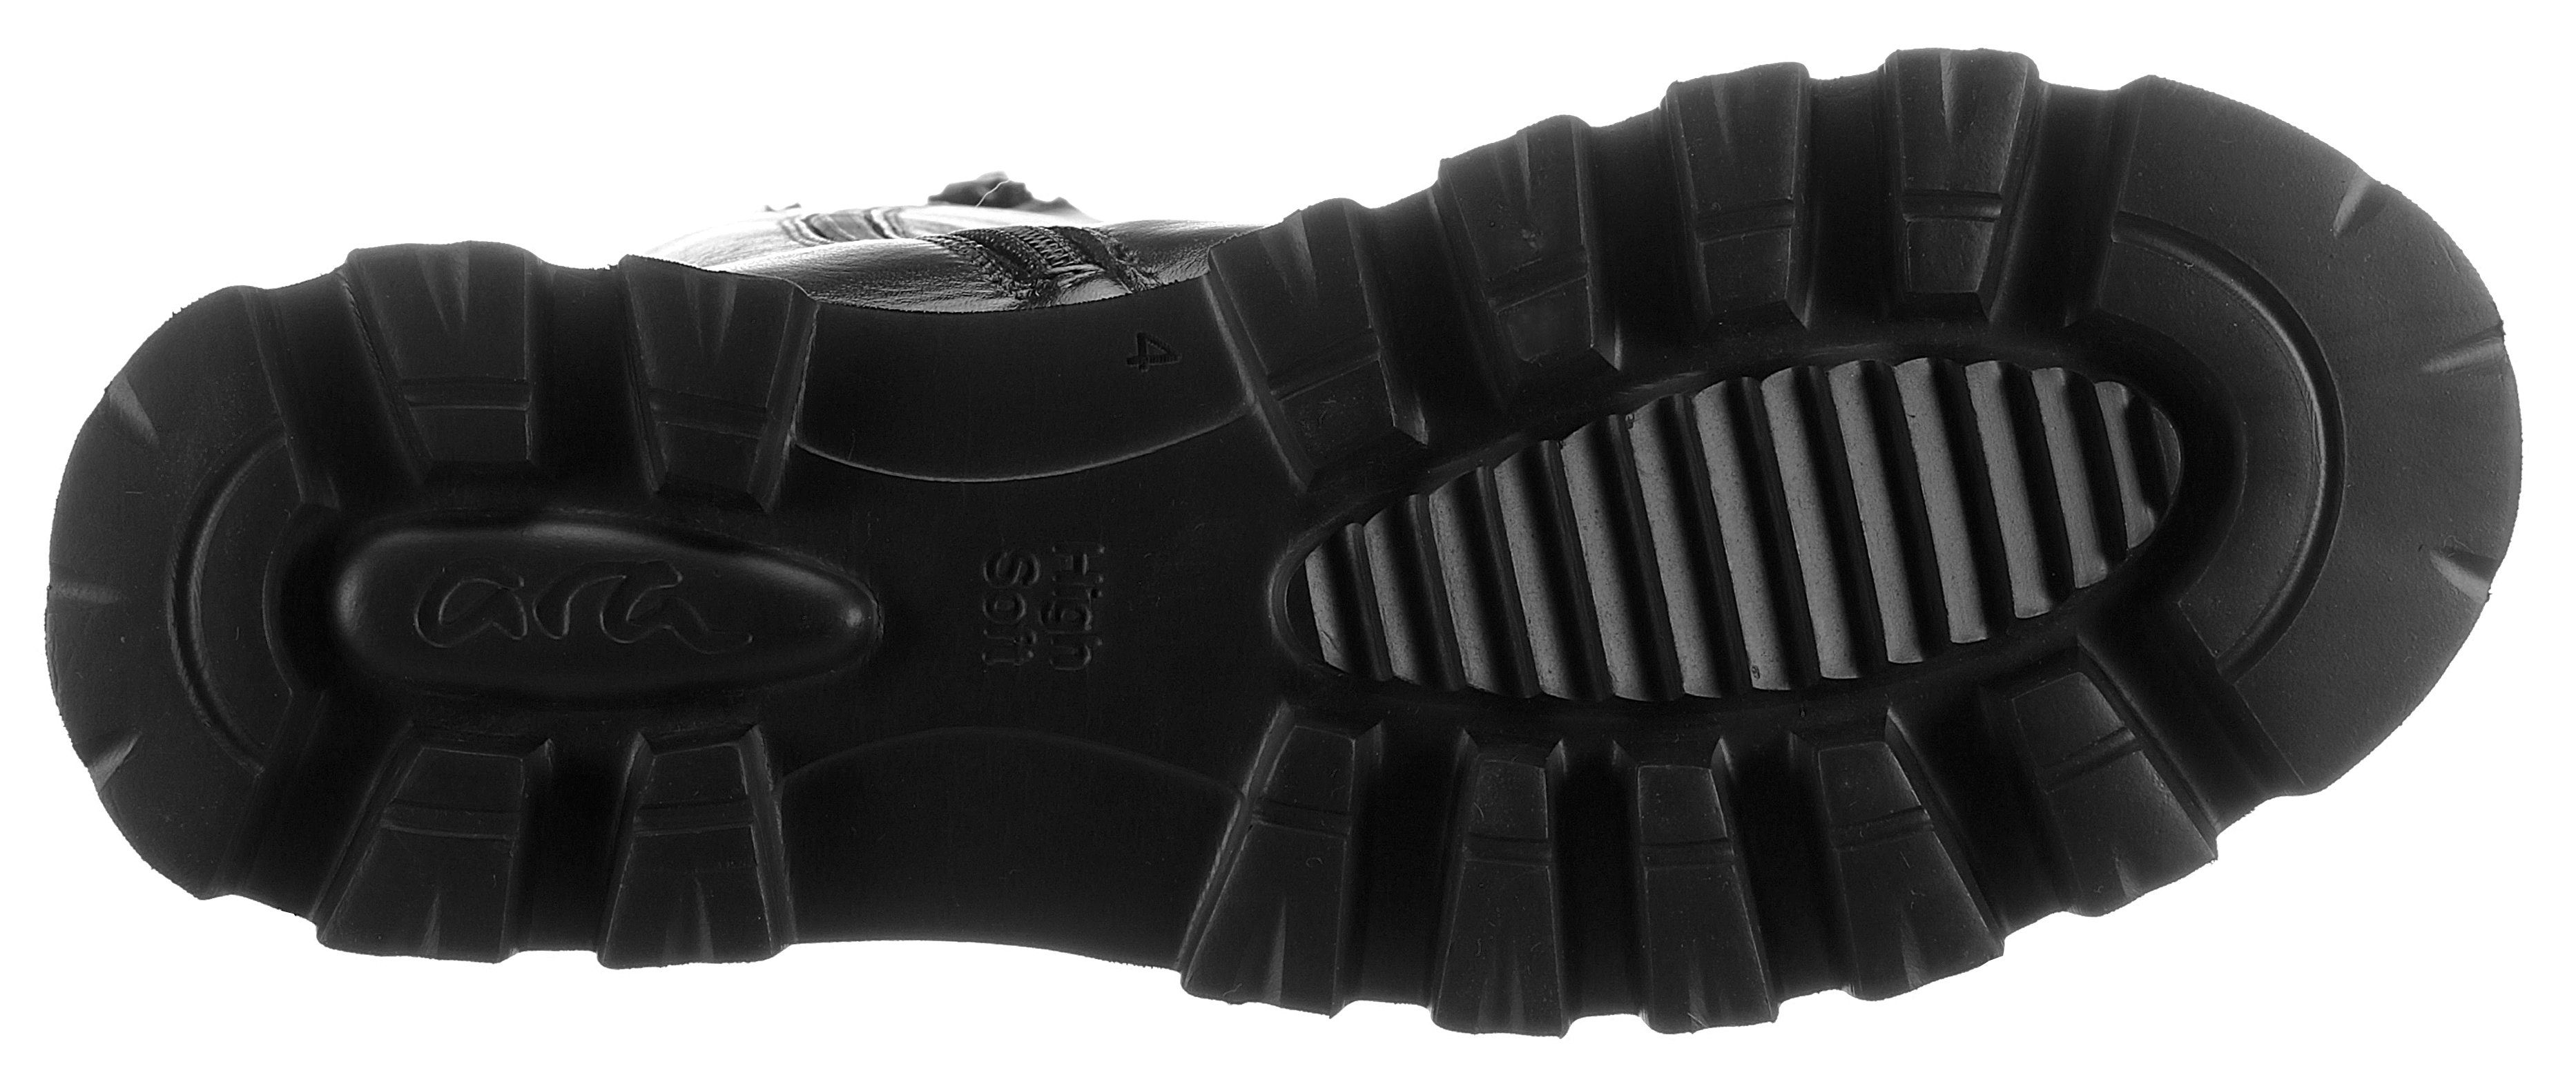 schwarz 046608 praktischem Stiefel mit Reißverschluss KOPENHAGEN Ara